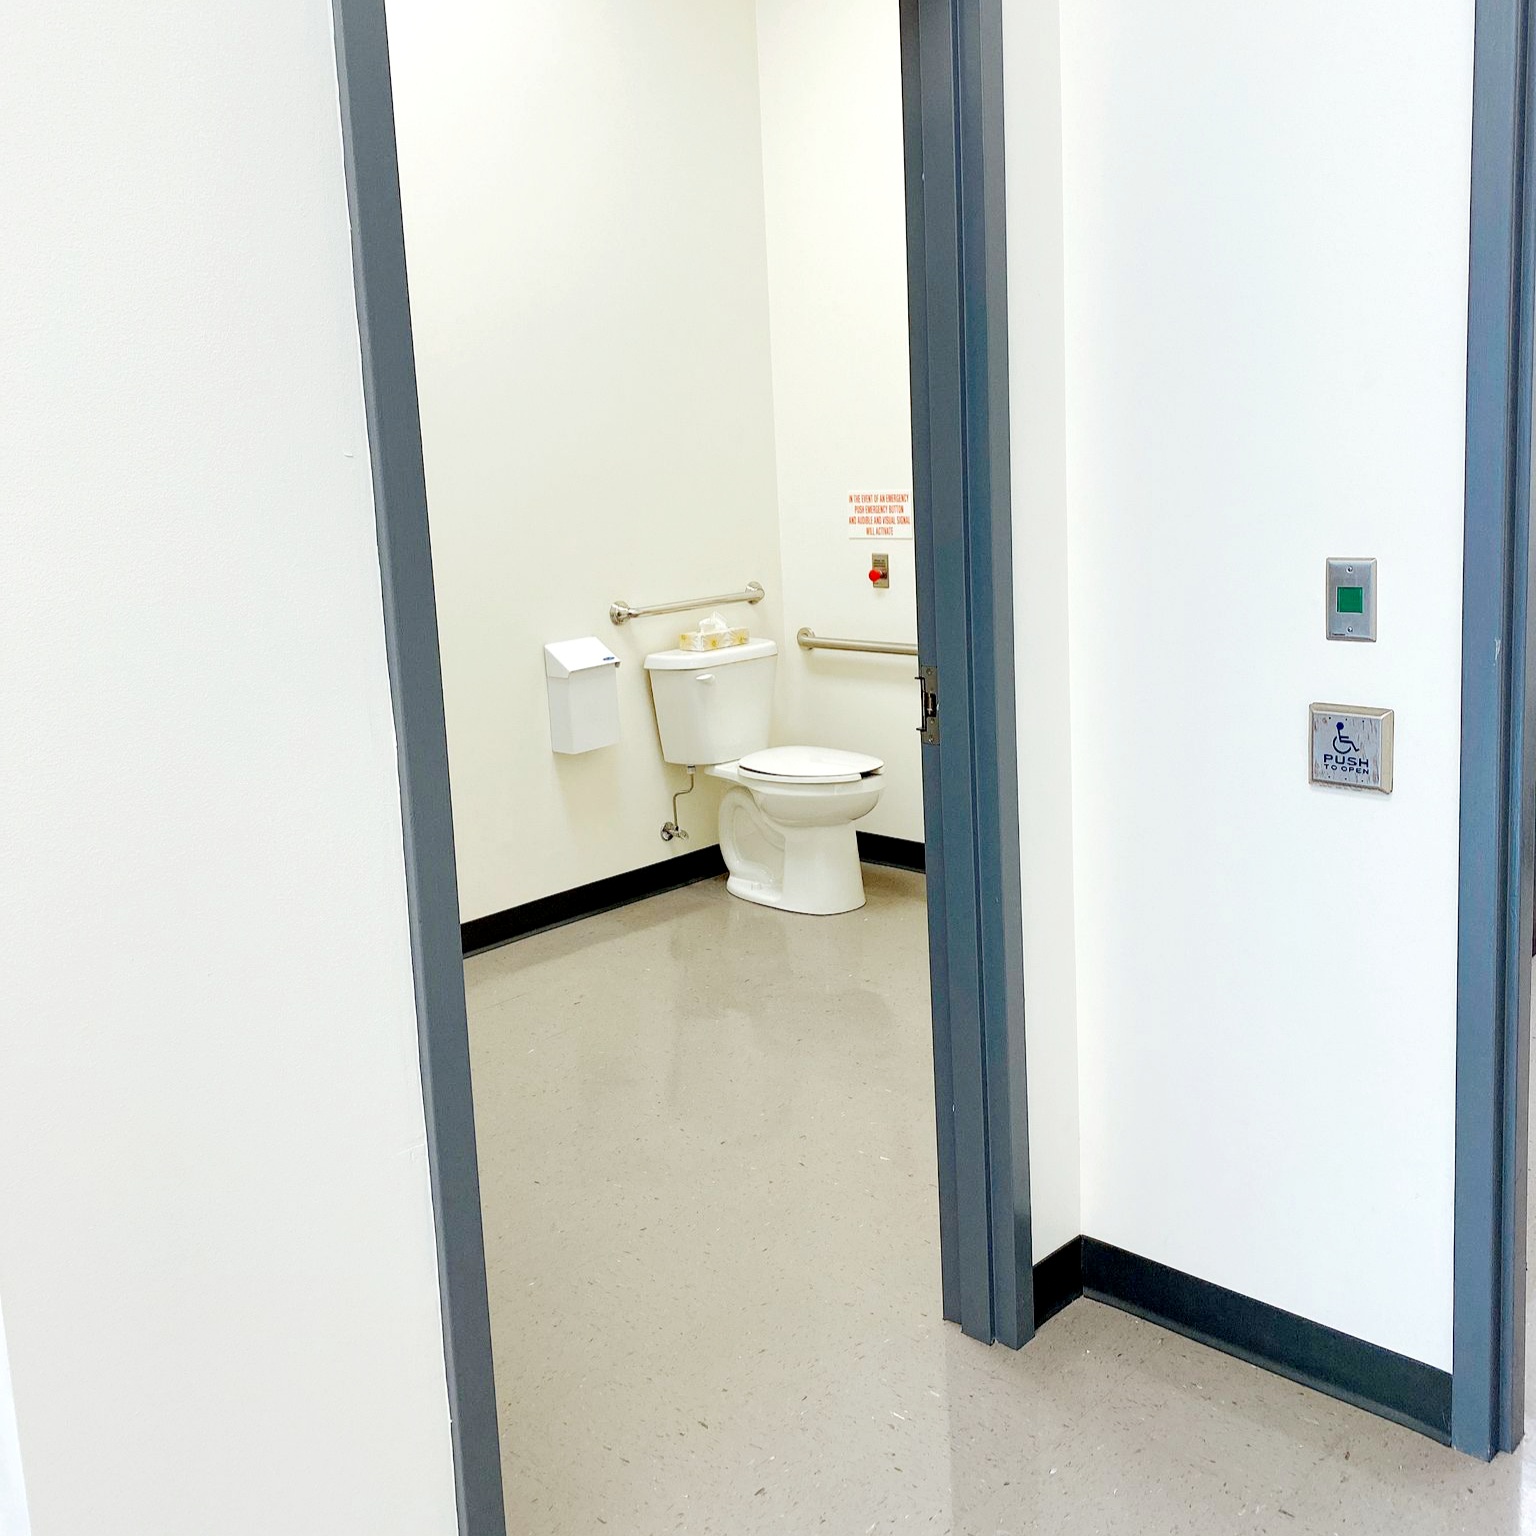 Sarnia accessible washroom